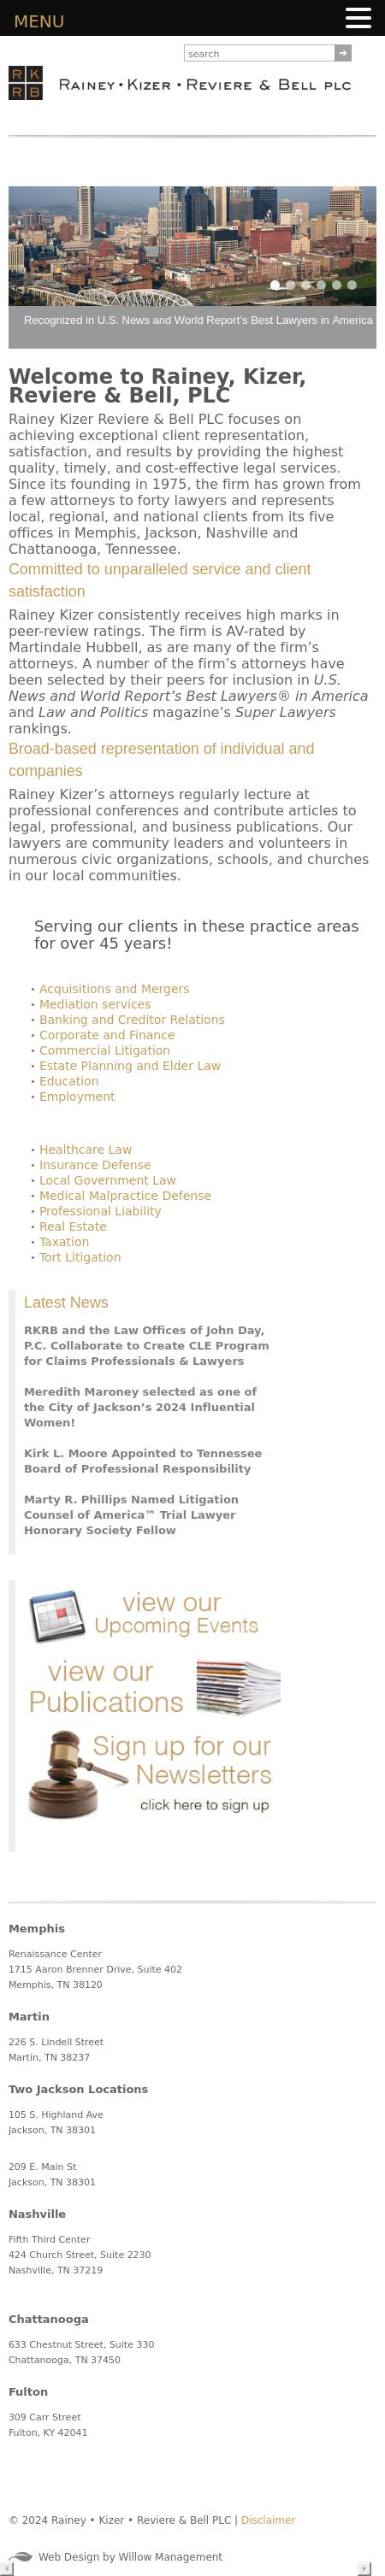 Rainey Kizer Reviere & Bell Plc - Memphis TN Lawyers